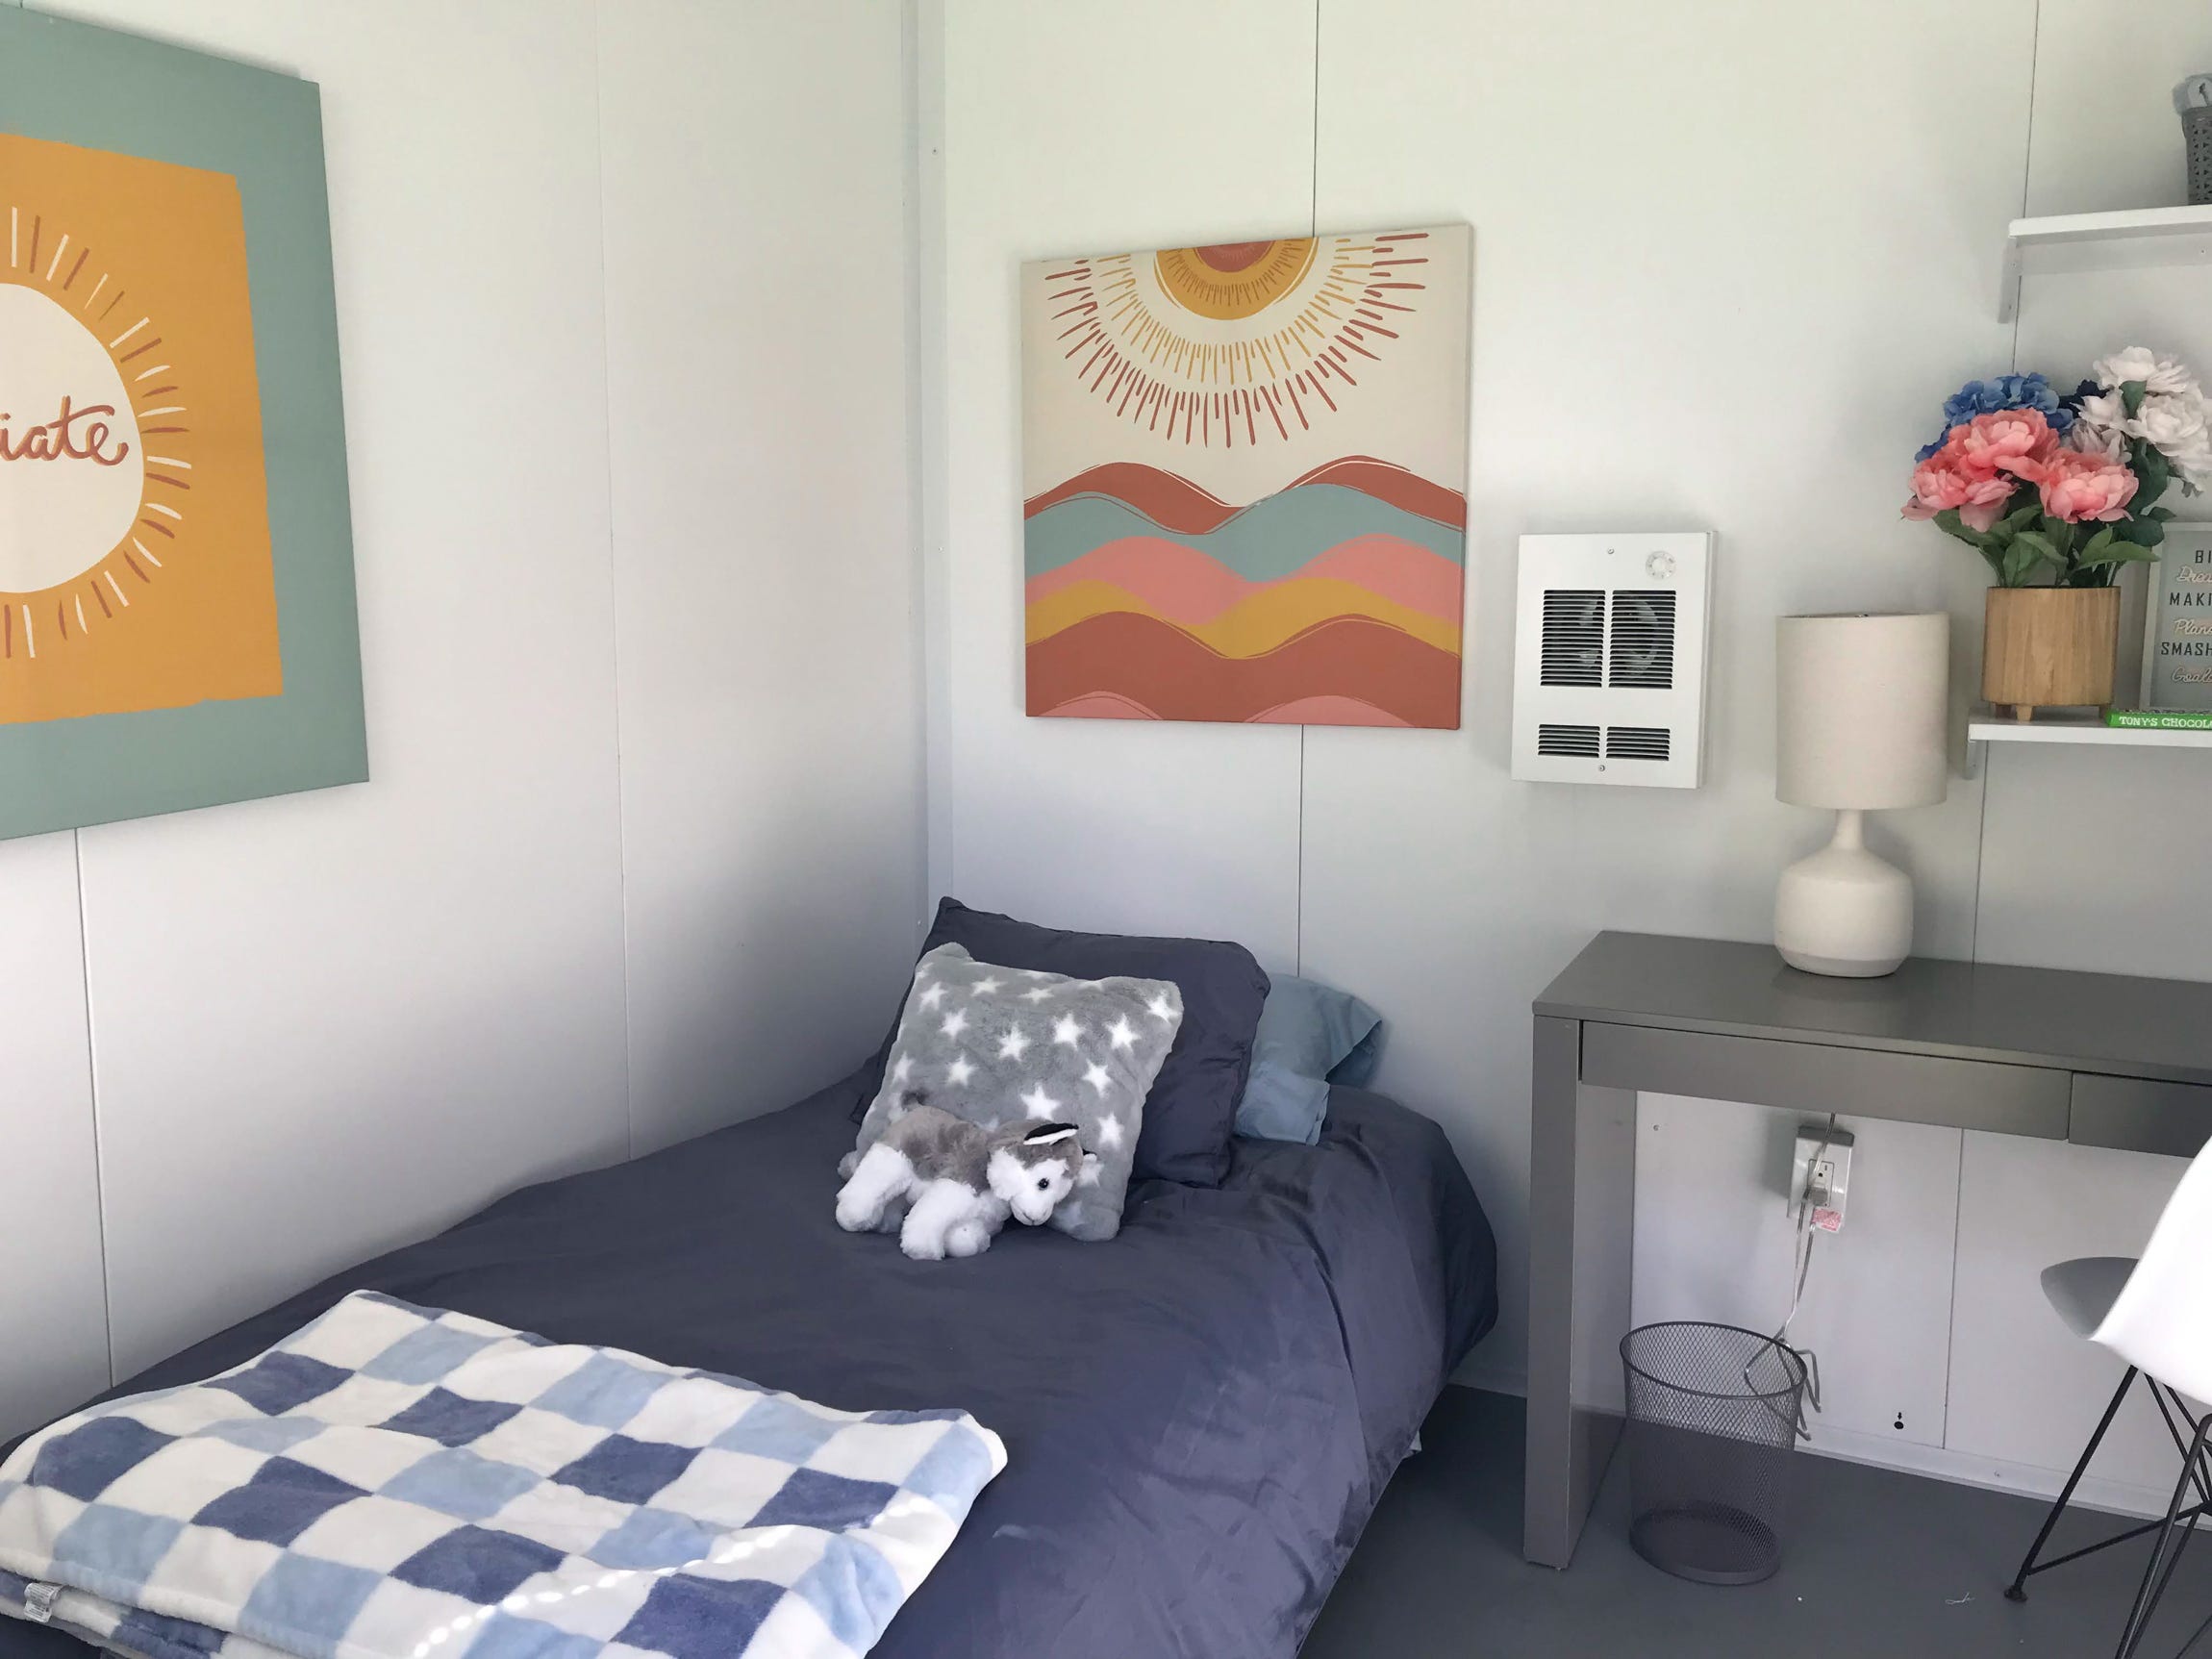 Ein Bett, eine Wanddekoration und ein Nachttisch in einem Tiny House am Standort Santa Barbara von DignityMoves